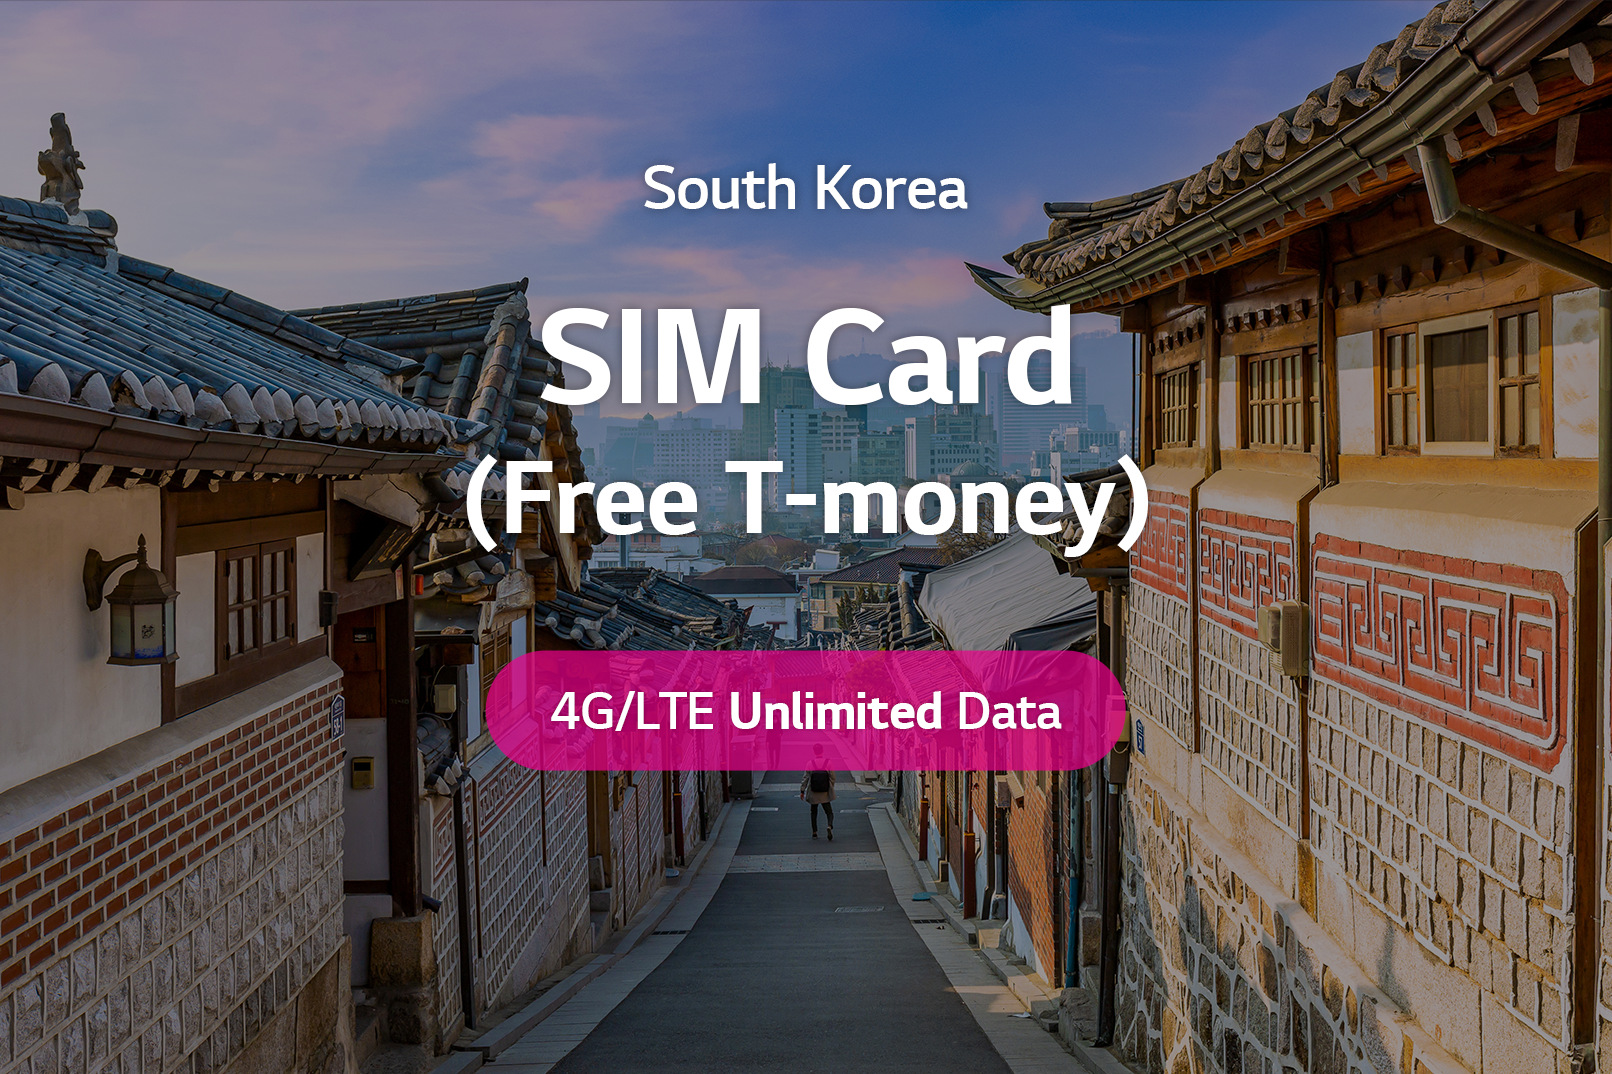 韓國無限流量上網卡 + T money交通卡 (LG U+)